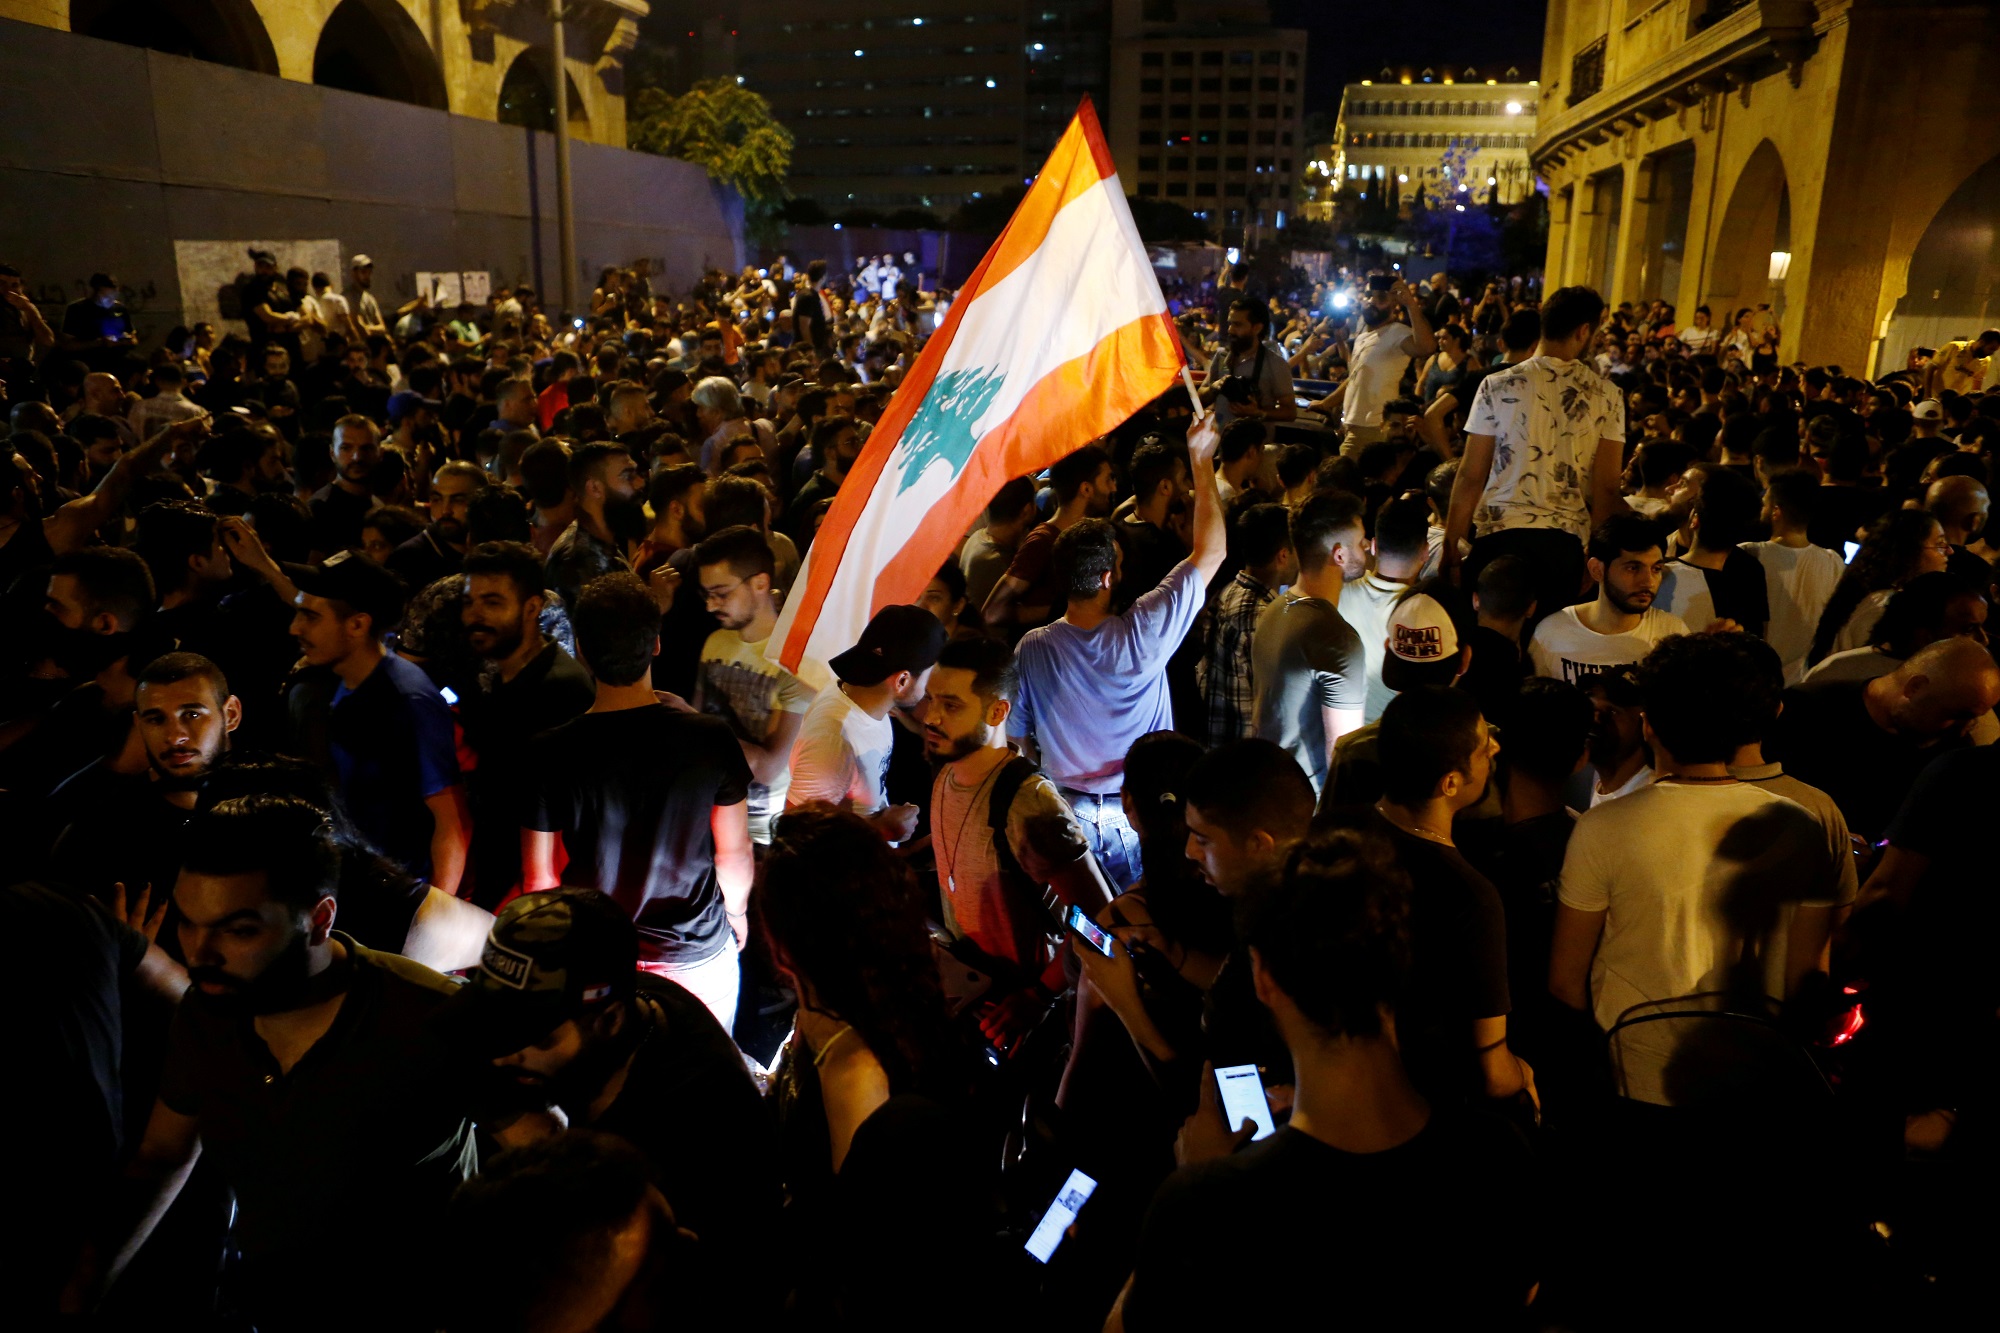 متظاهر يحمل العلم اللبناني خلال مظاهرة في بيروت احتجاجا على تدهور الوضع الاقتصادي في لبنان. 17 تشرين أول / أكتوبر 2019. (رويترز)